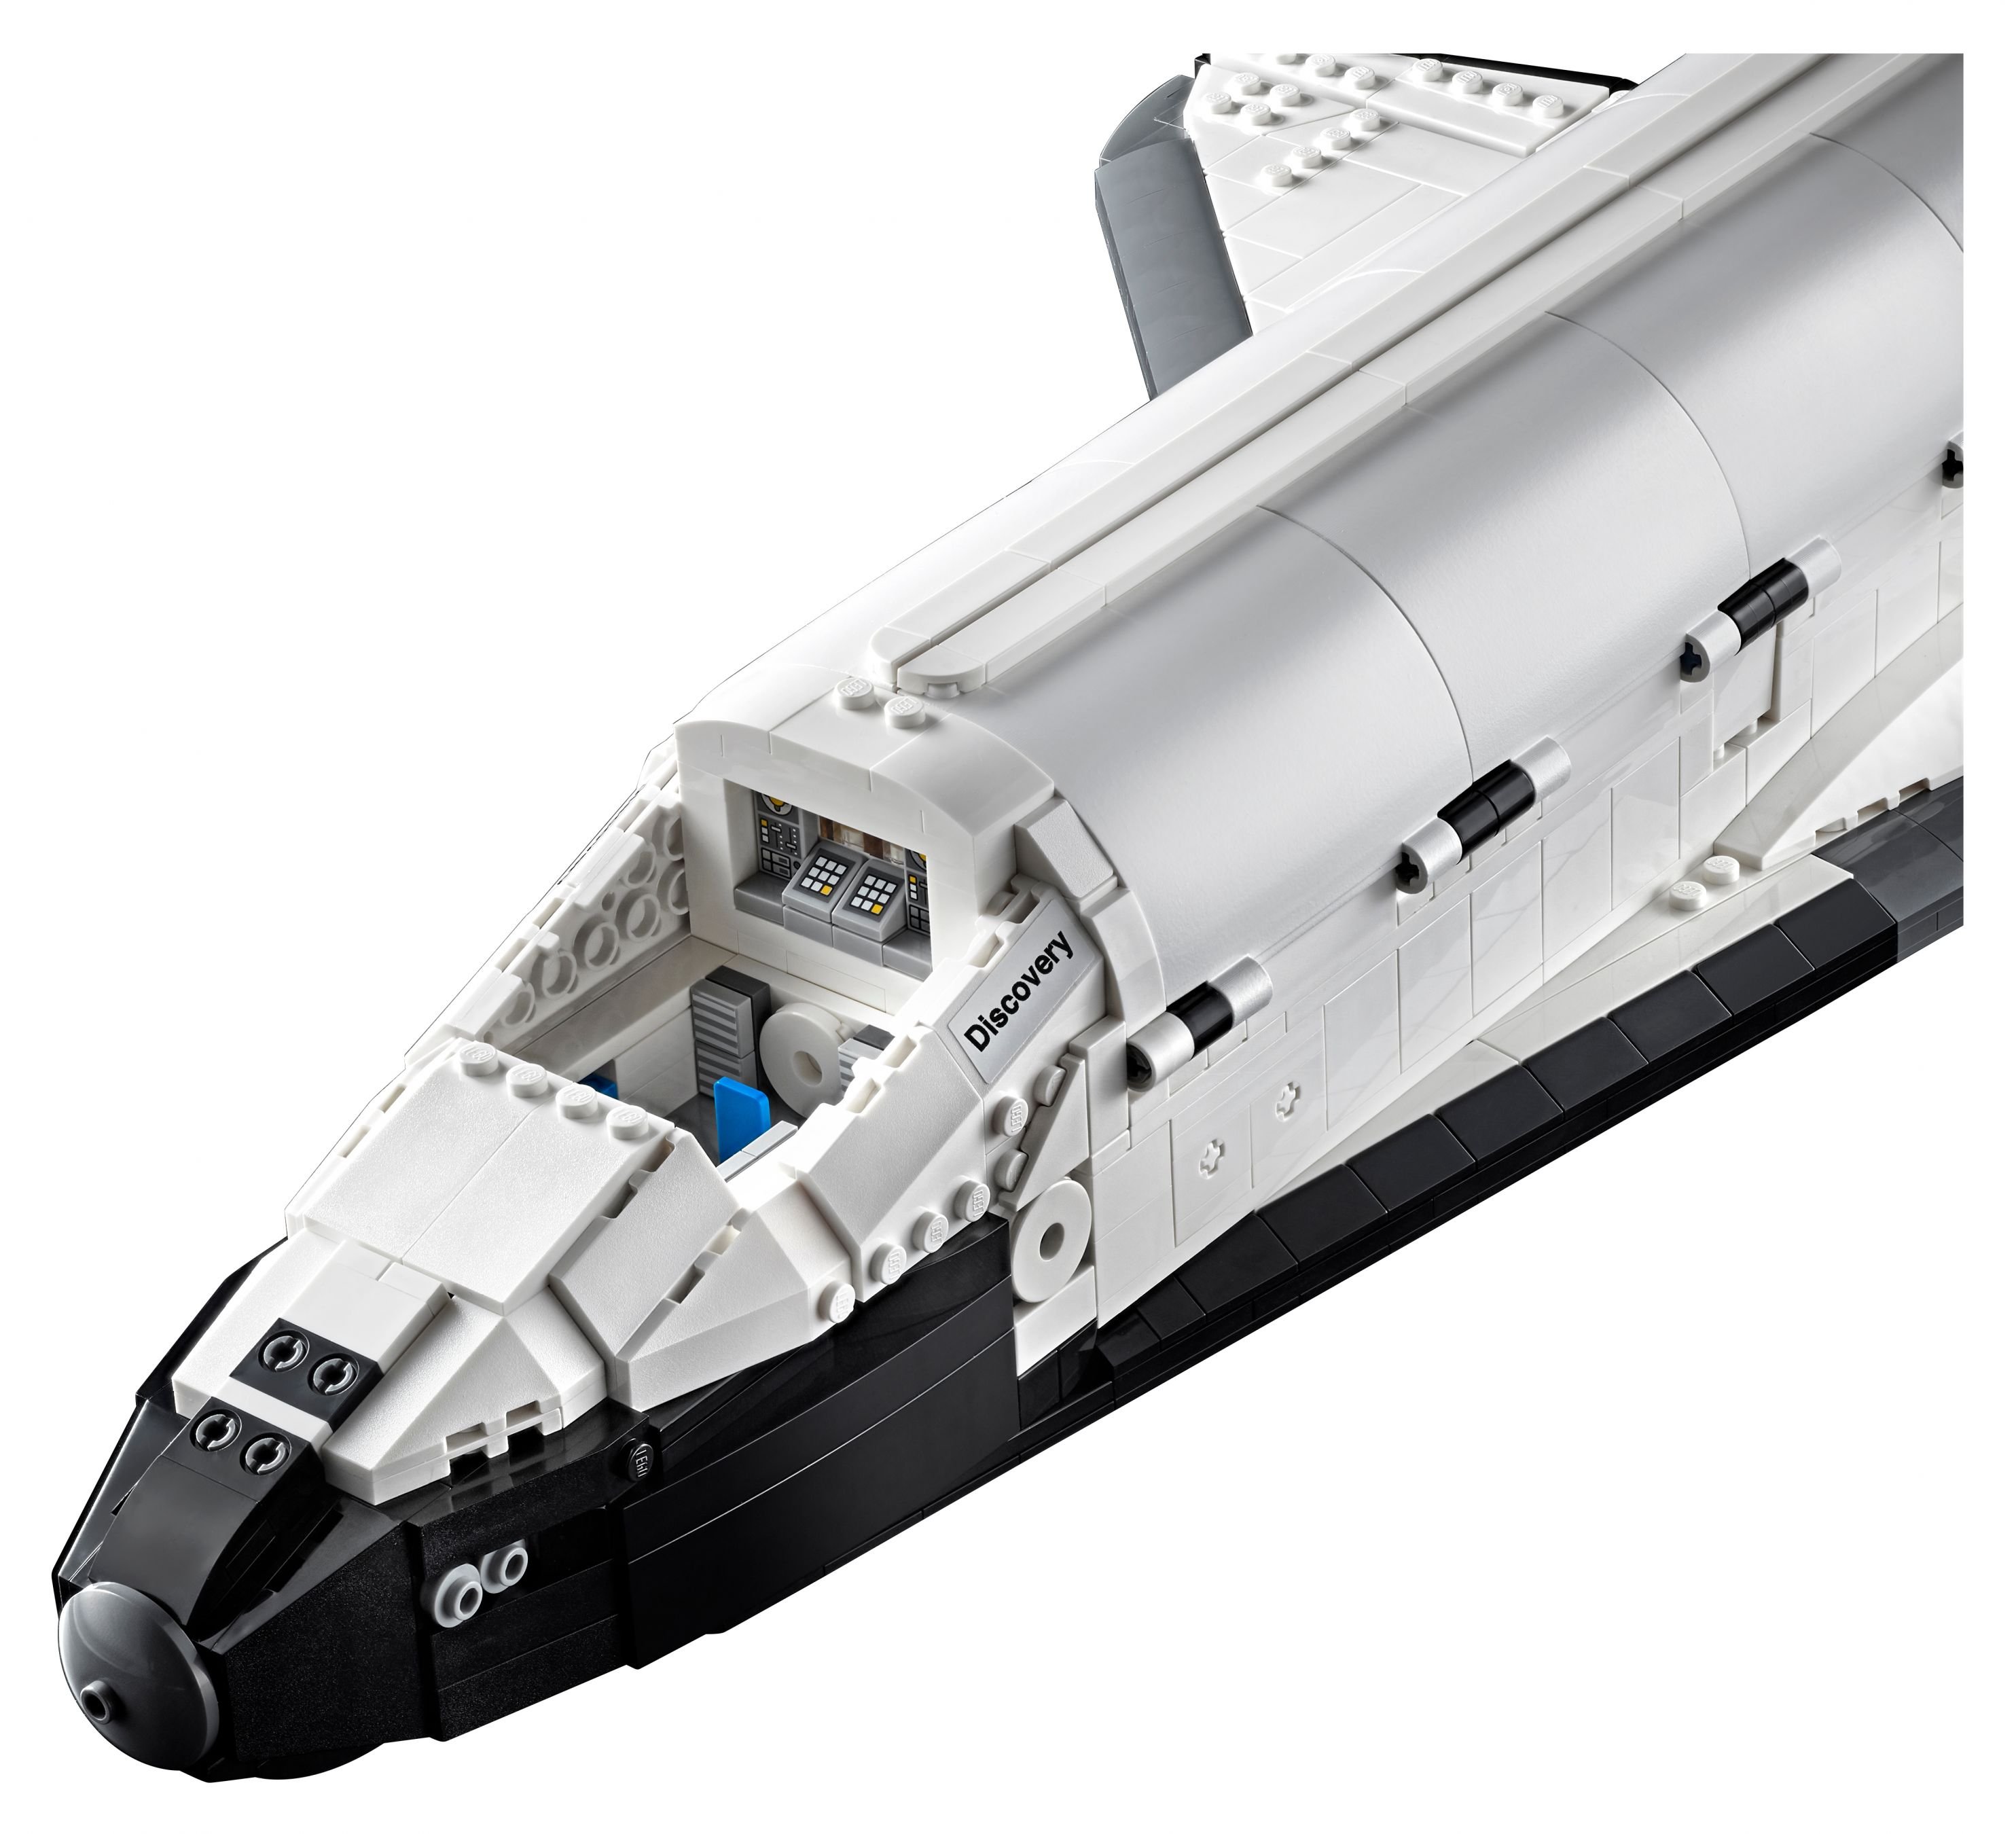 LEGO Advanced Models 10283 NASA-Spaceshuttle „Discovery“ LEGO_10283_alt9.jpg